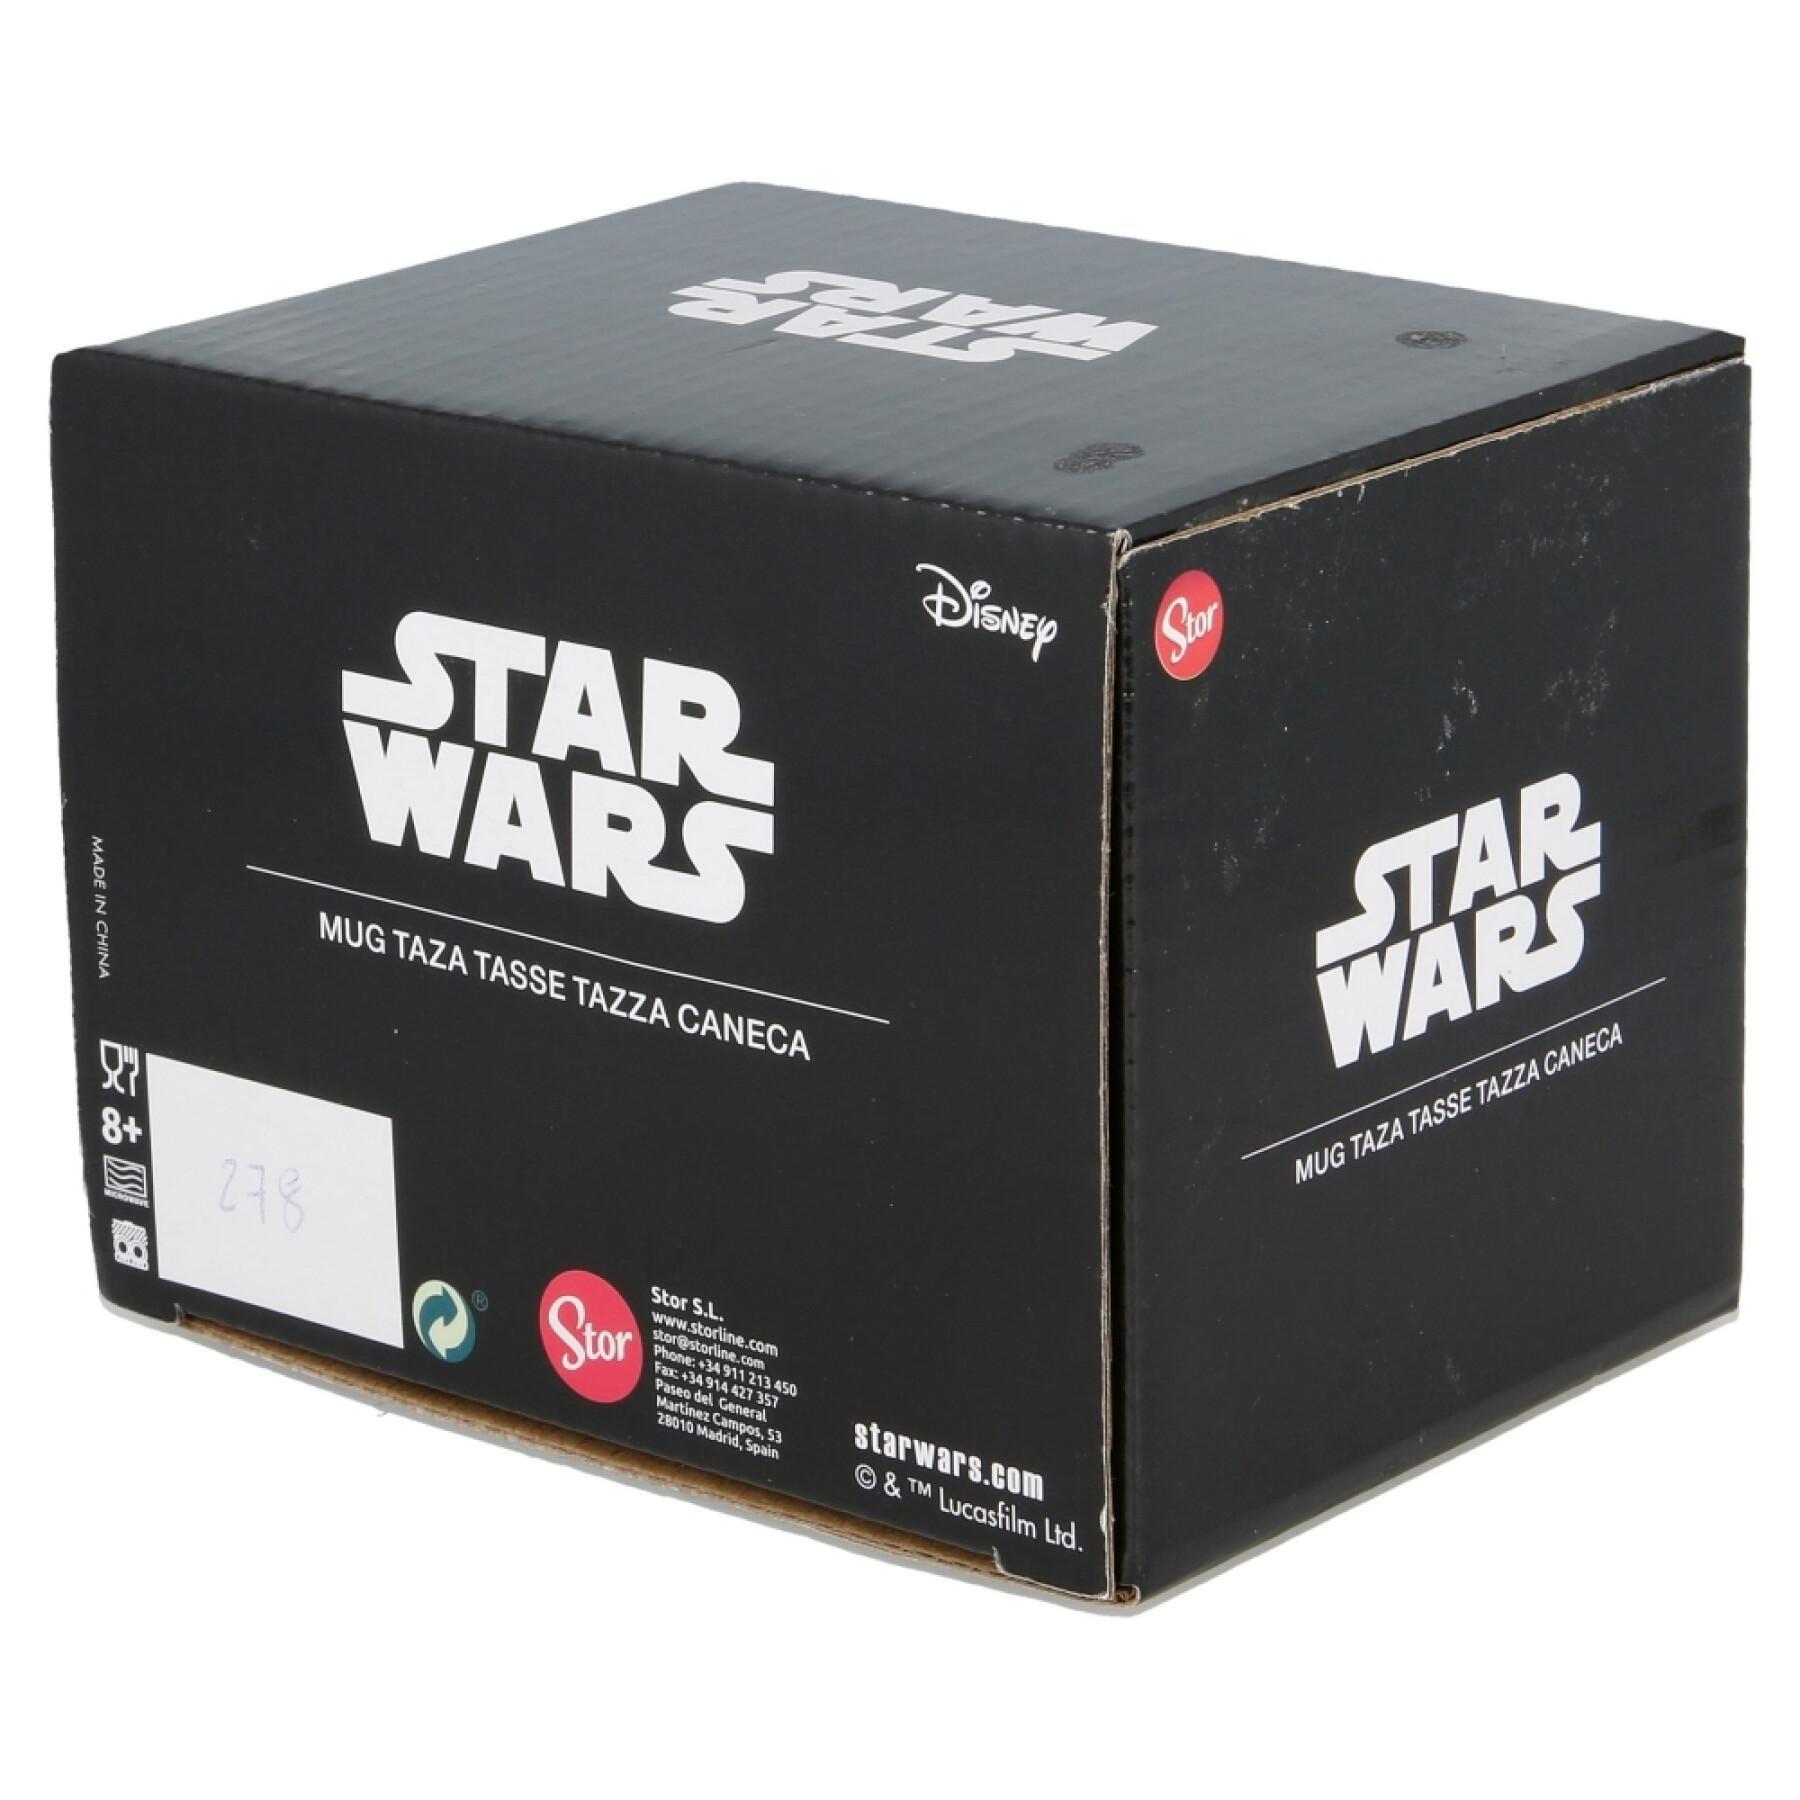 Ceramic mug gift box stor Star Wars